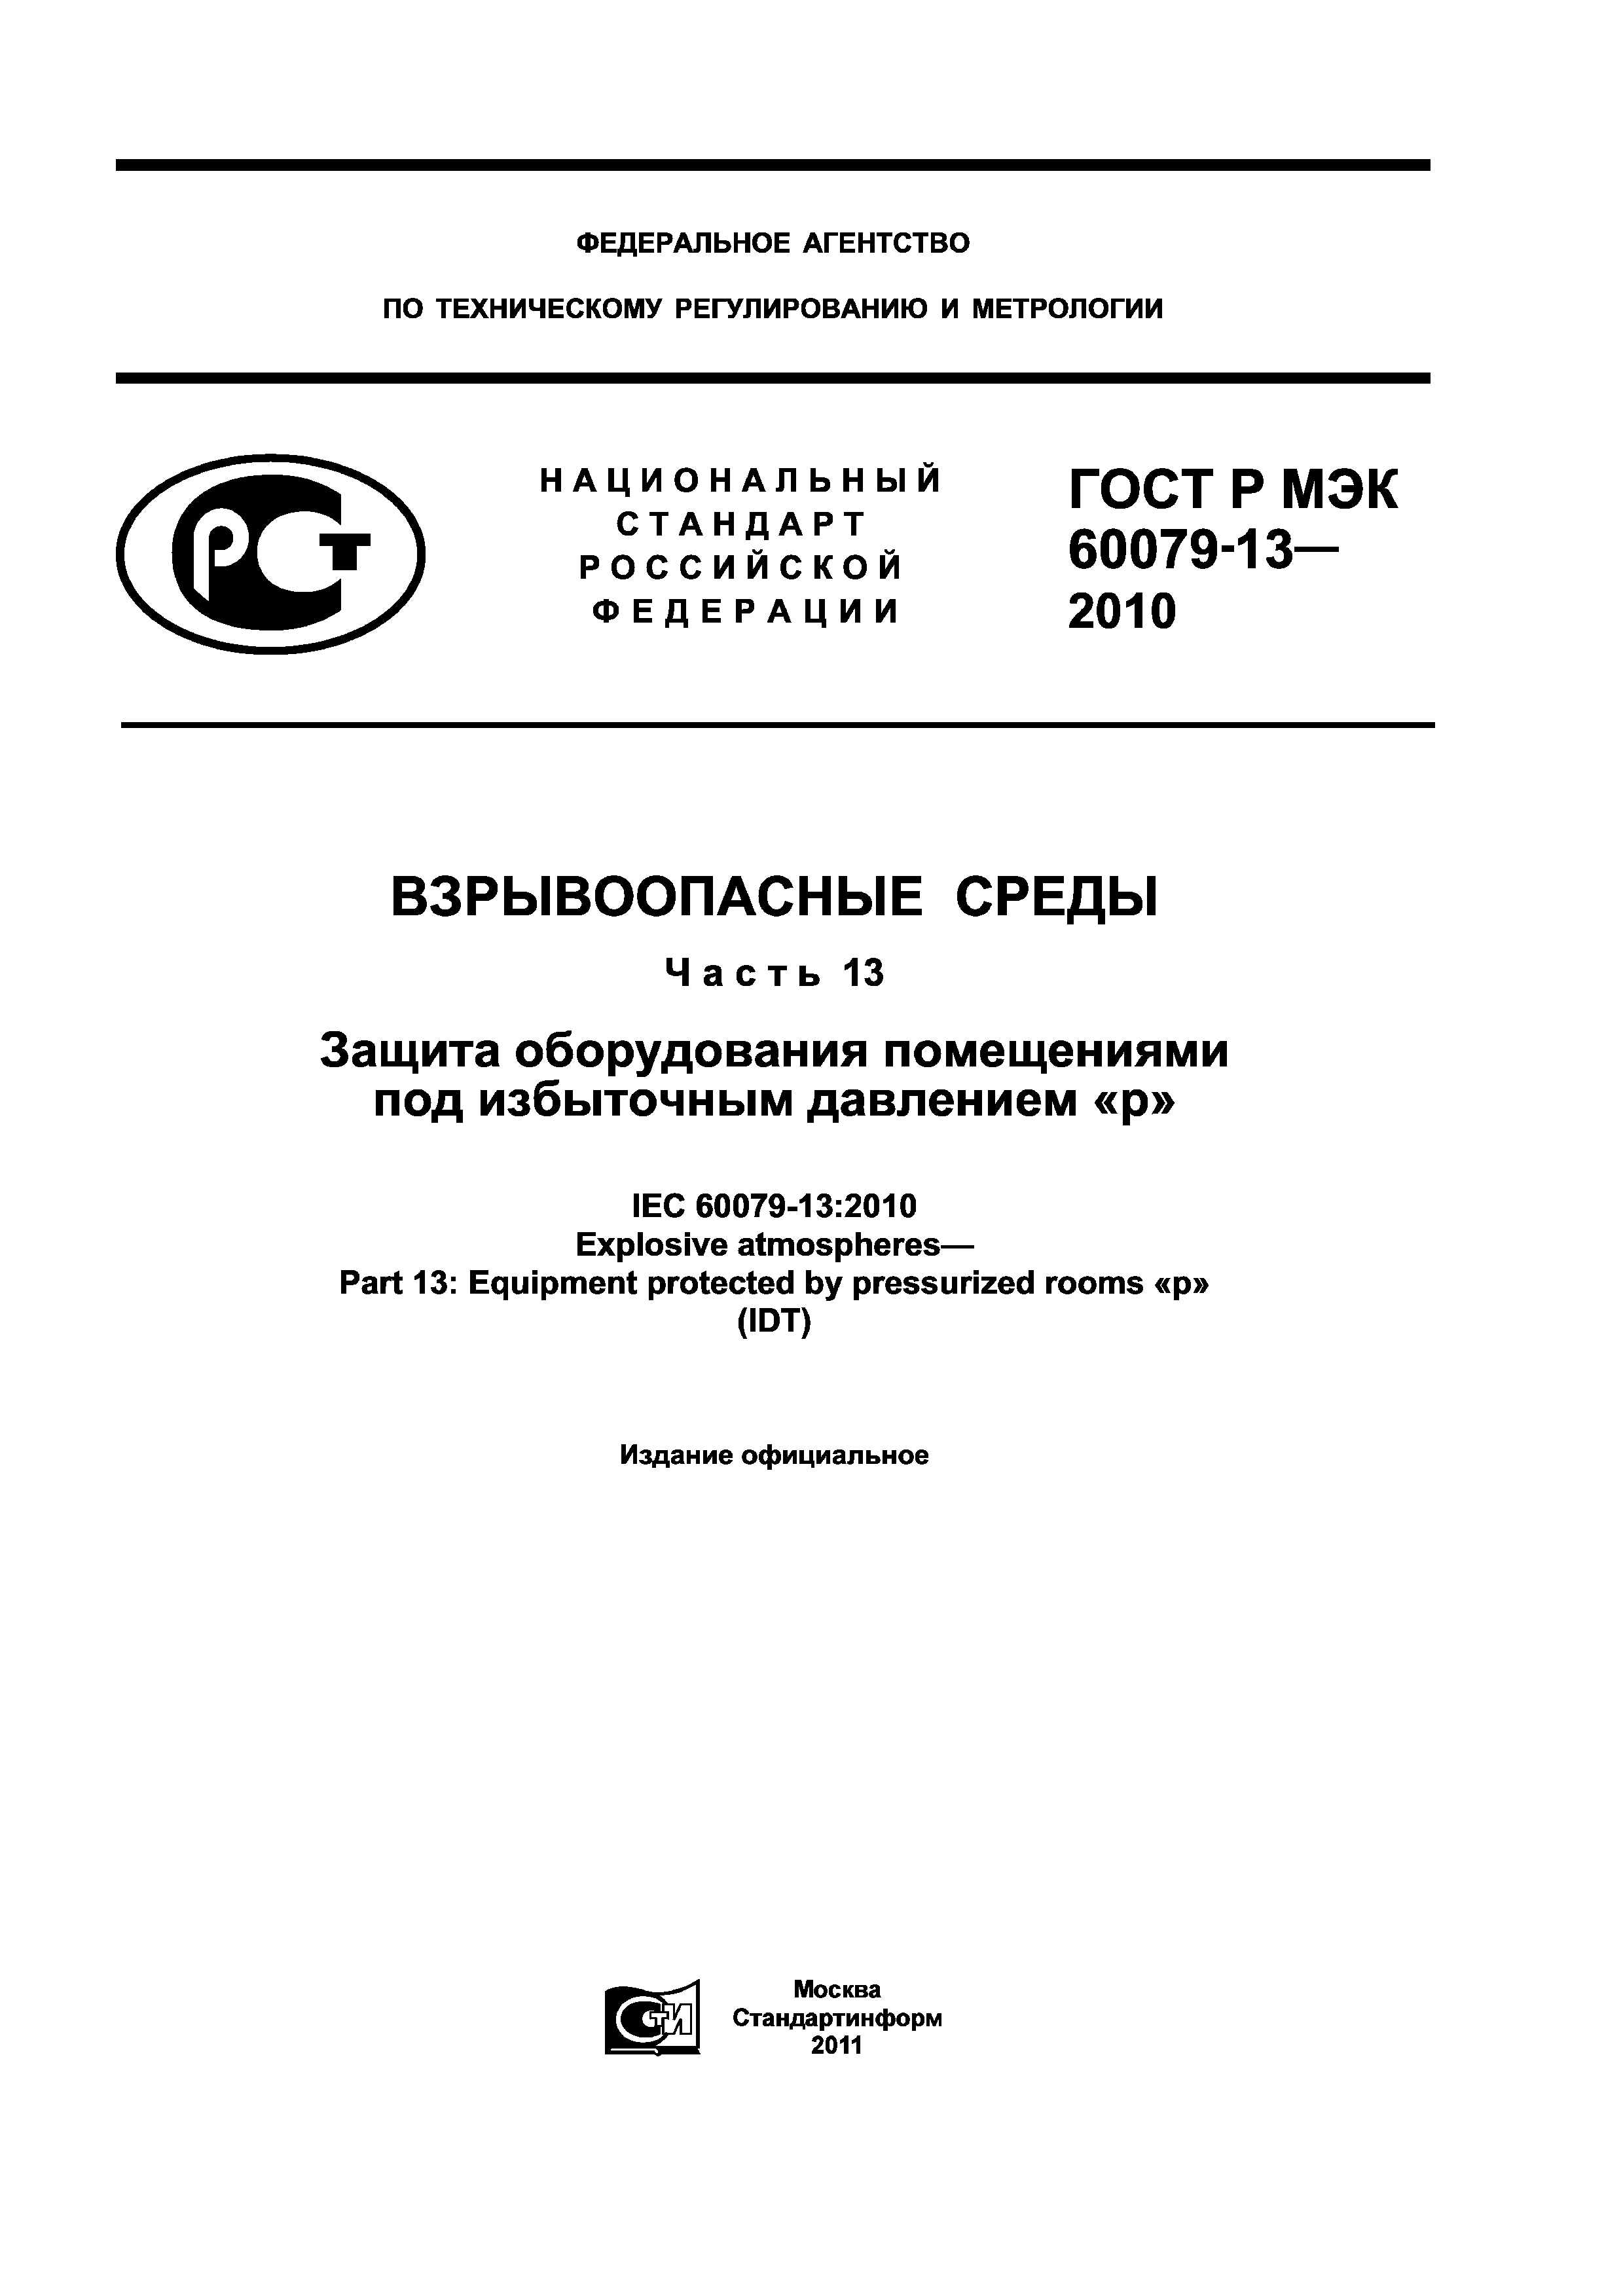 ГОСТ Р МЭК 60079-13-2010